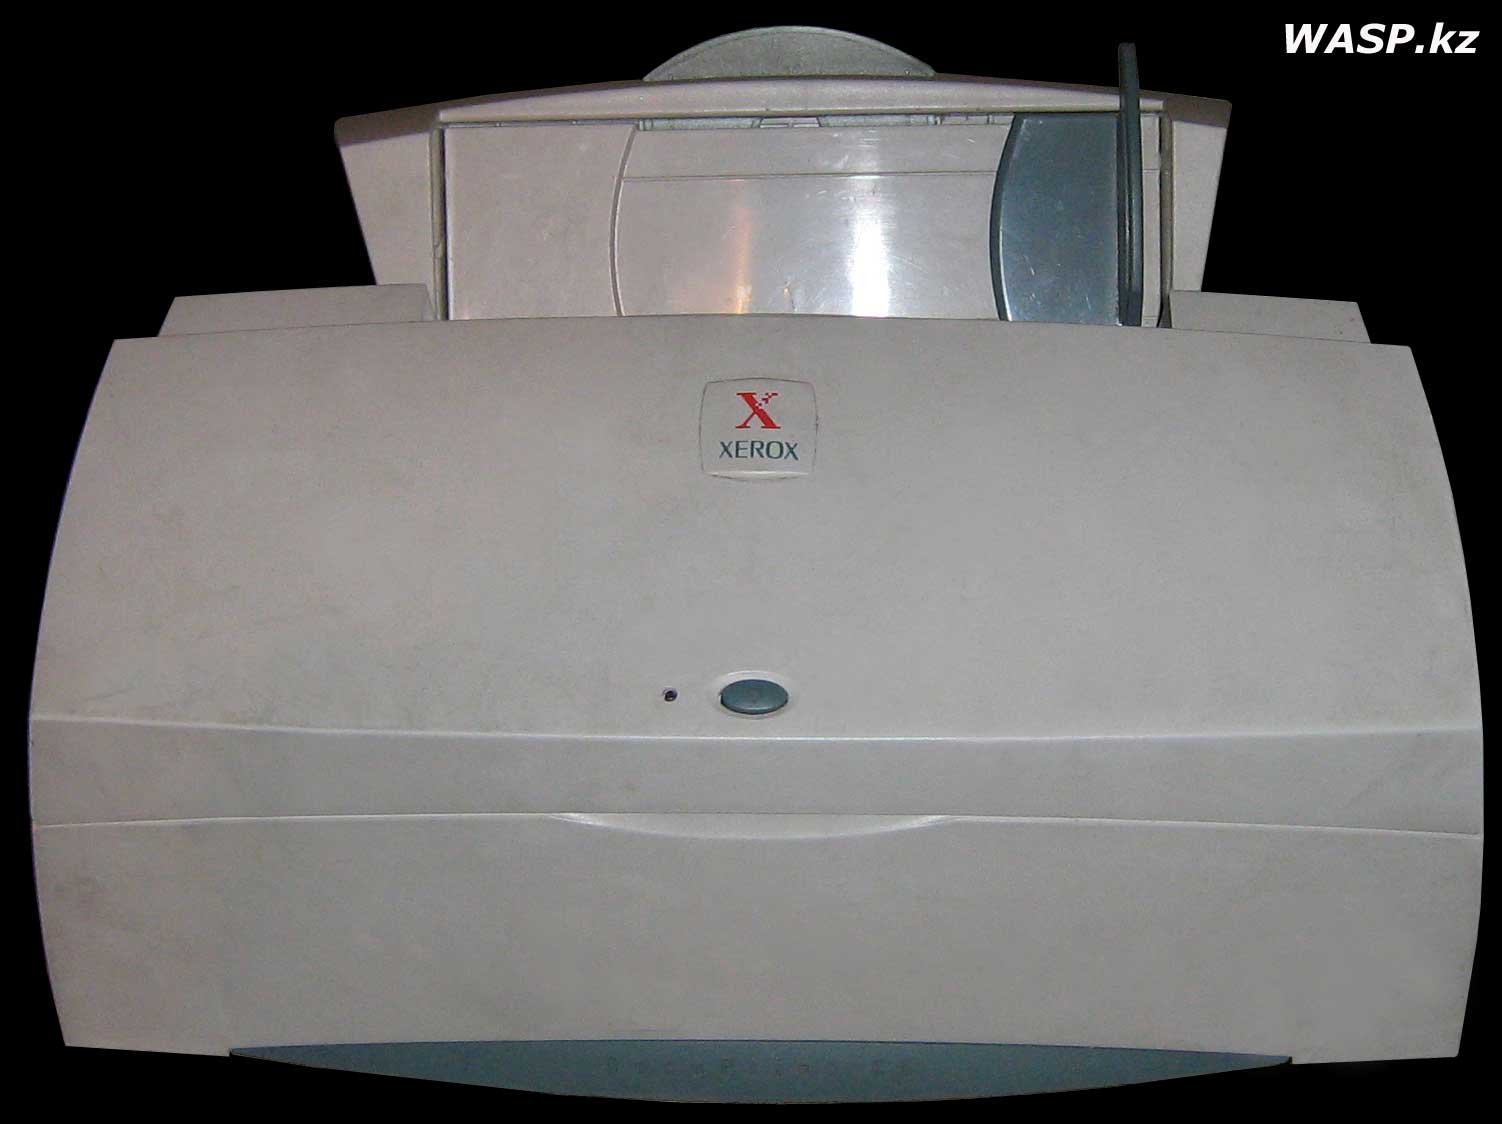 Xerox DocuPrint C8 струйный принтер обзор